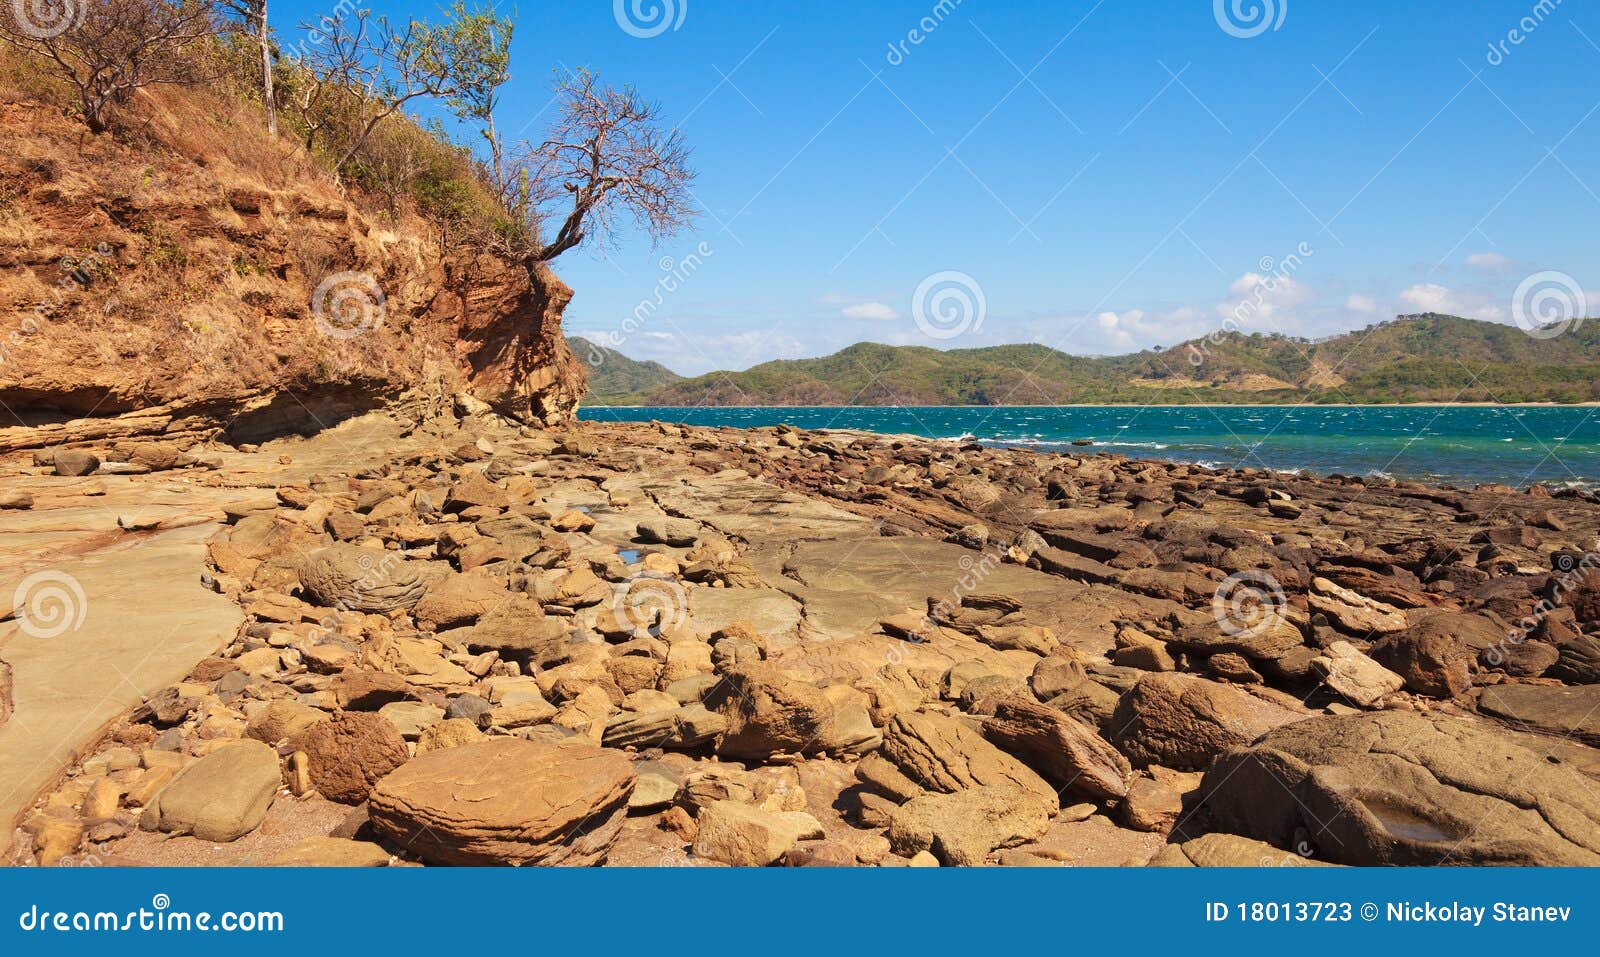 rocky guanacaste coast